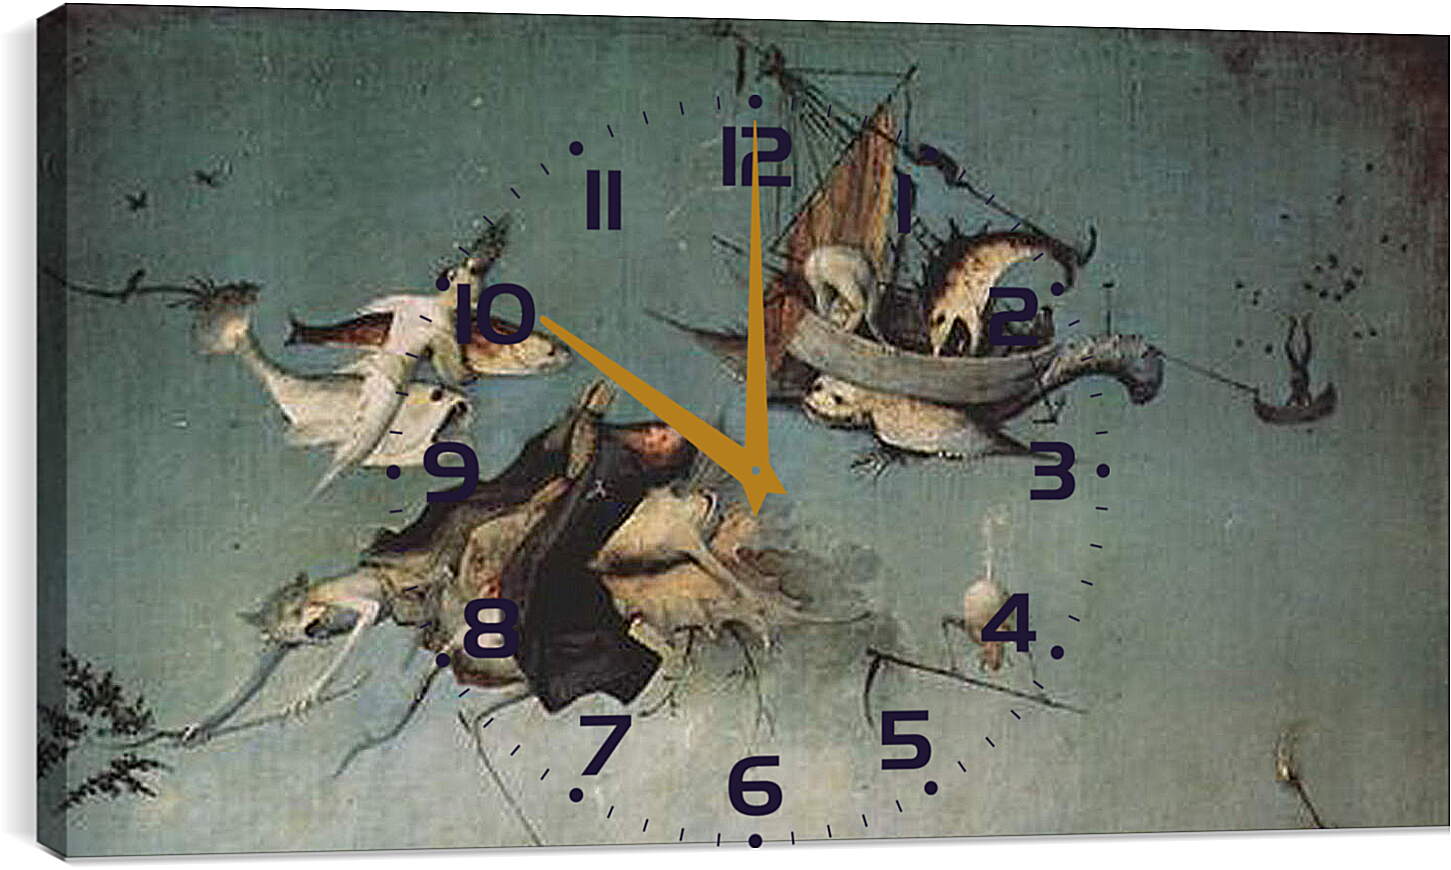 Часы картина - Versuchung des Hl. Antonius. Иероним Босх
